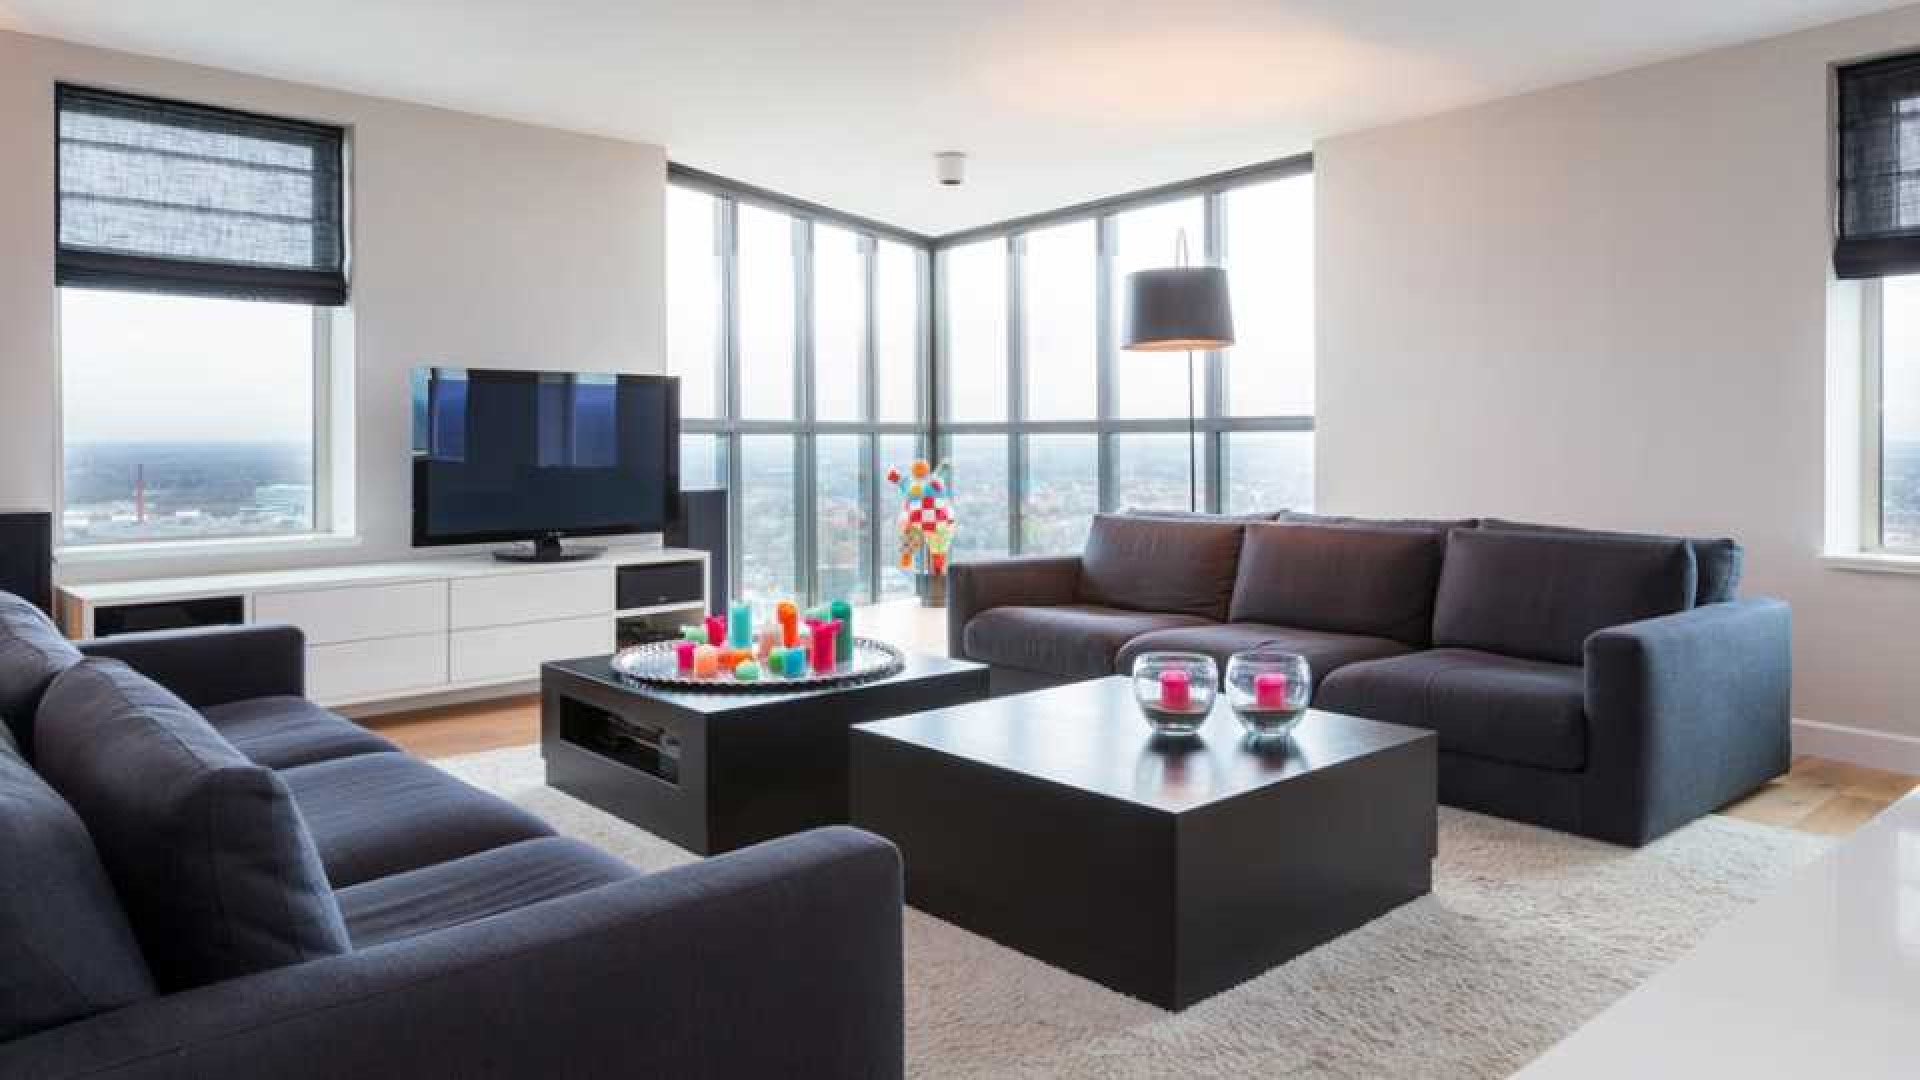 Amanda Krabbe en vriend Harrie Kolen kopen waanzinnig luxe penthouse in Eindhoven. Zie foto's 1